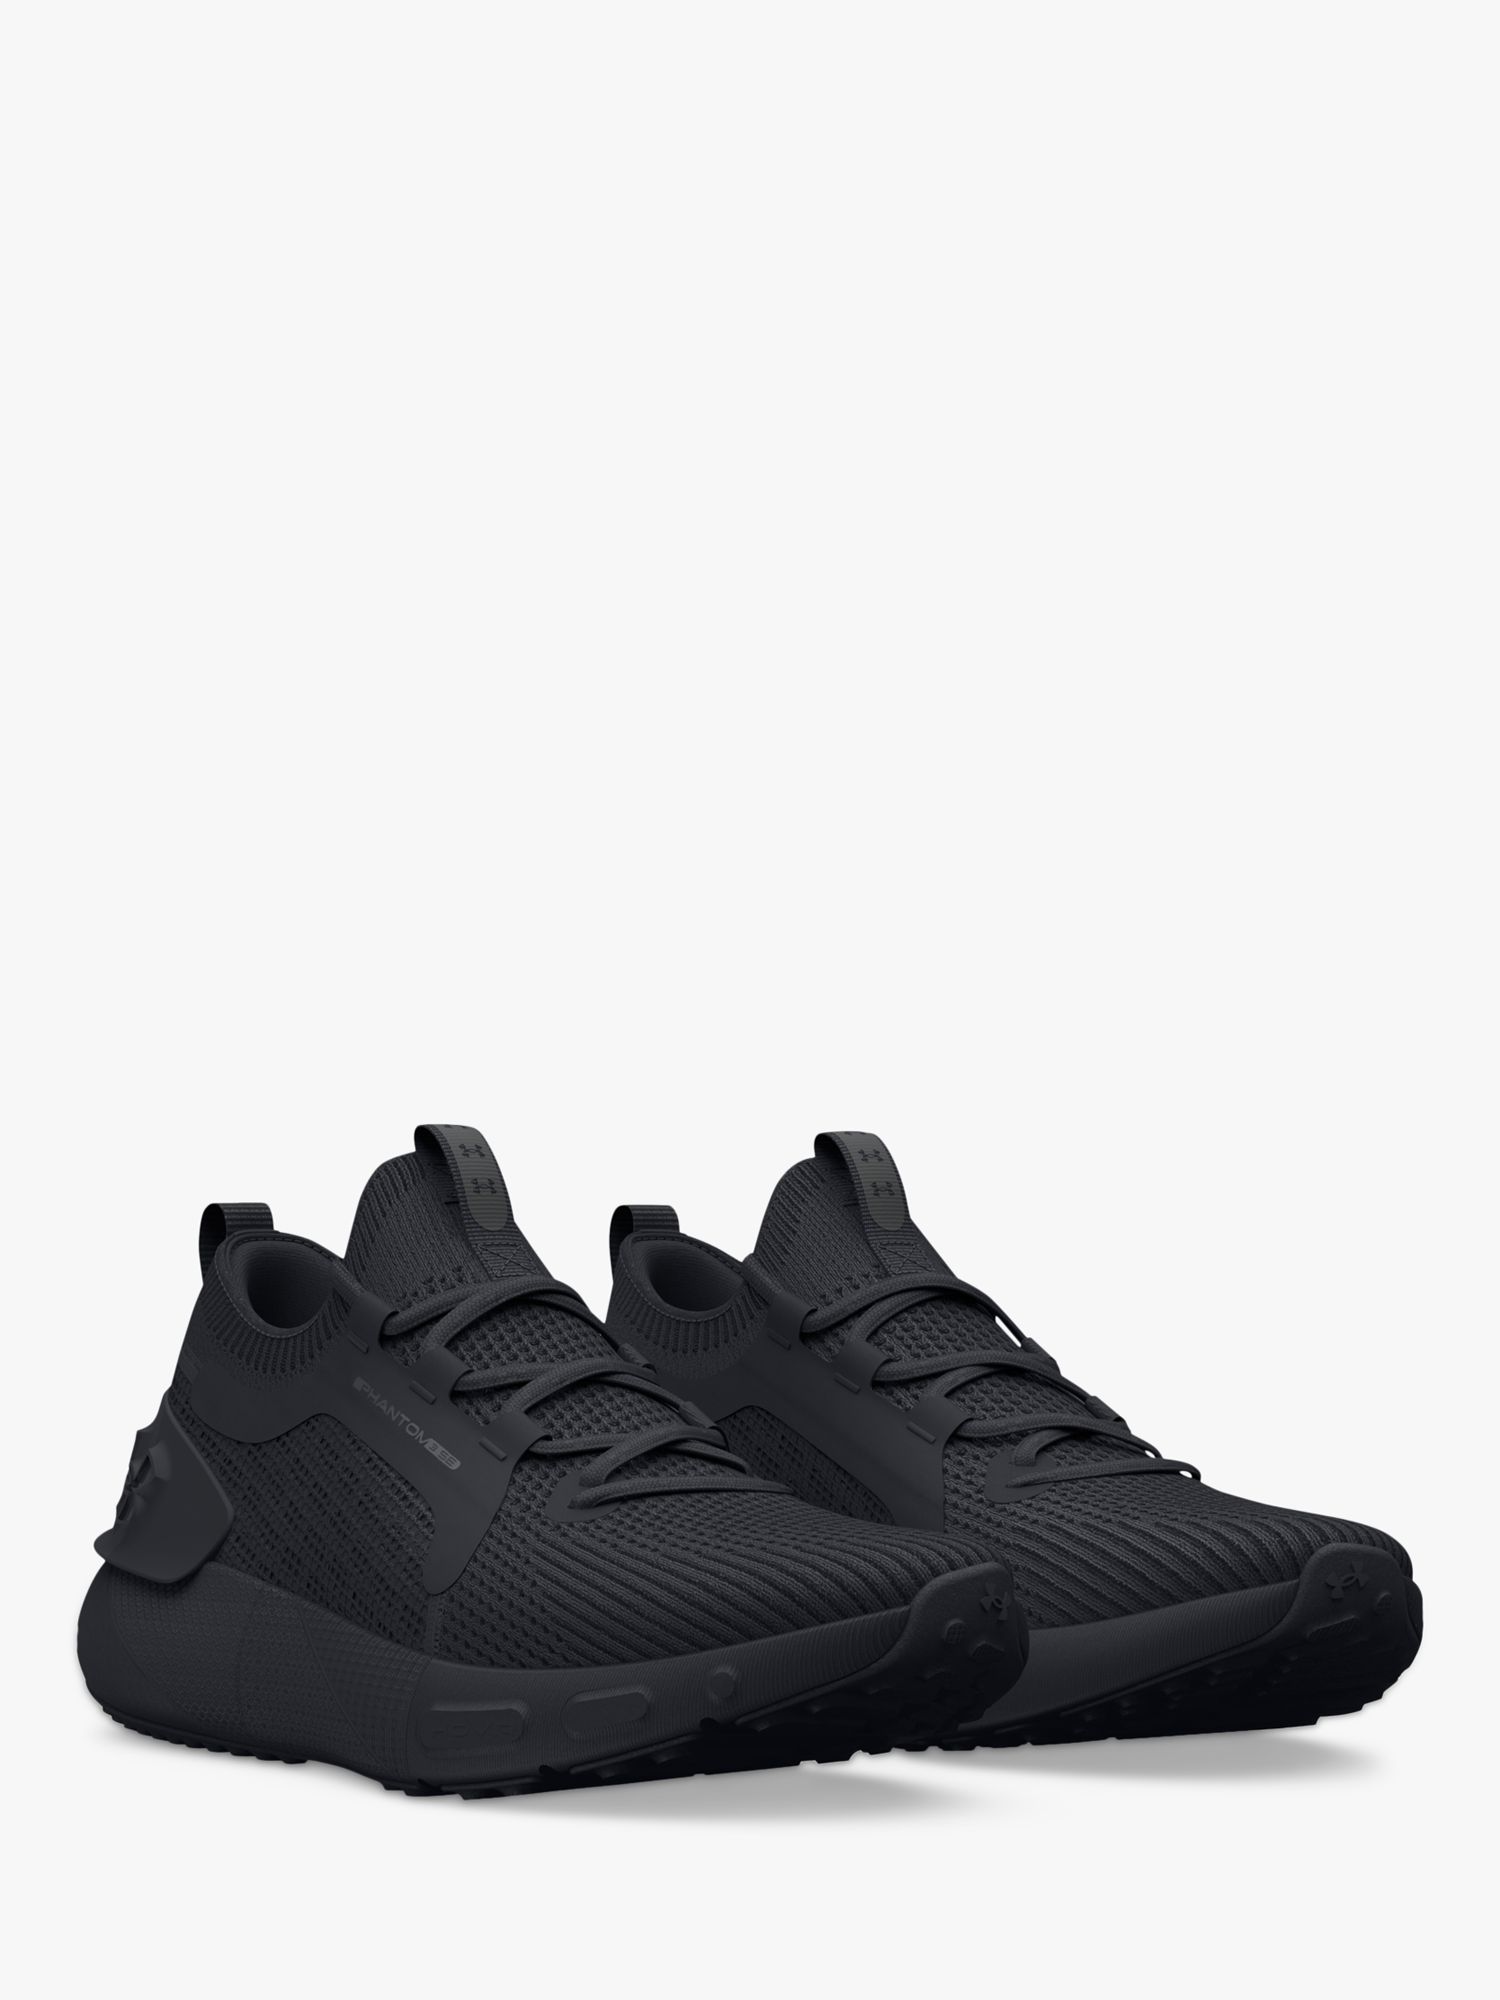 Under Armour HOVR™ Phantom 3 SE Men's Running Shoes, Black/Black